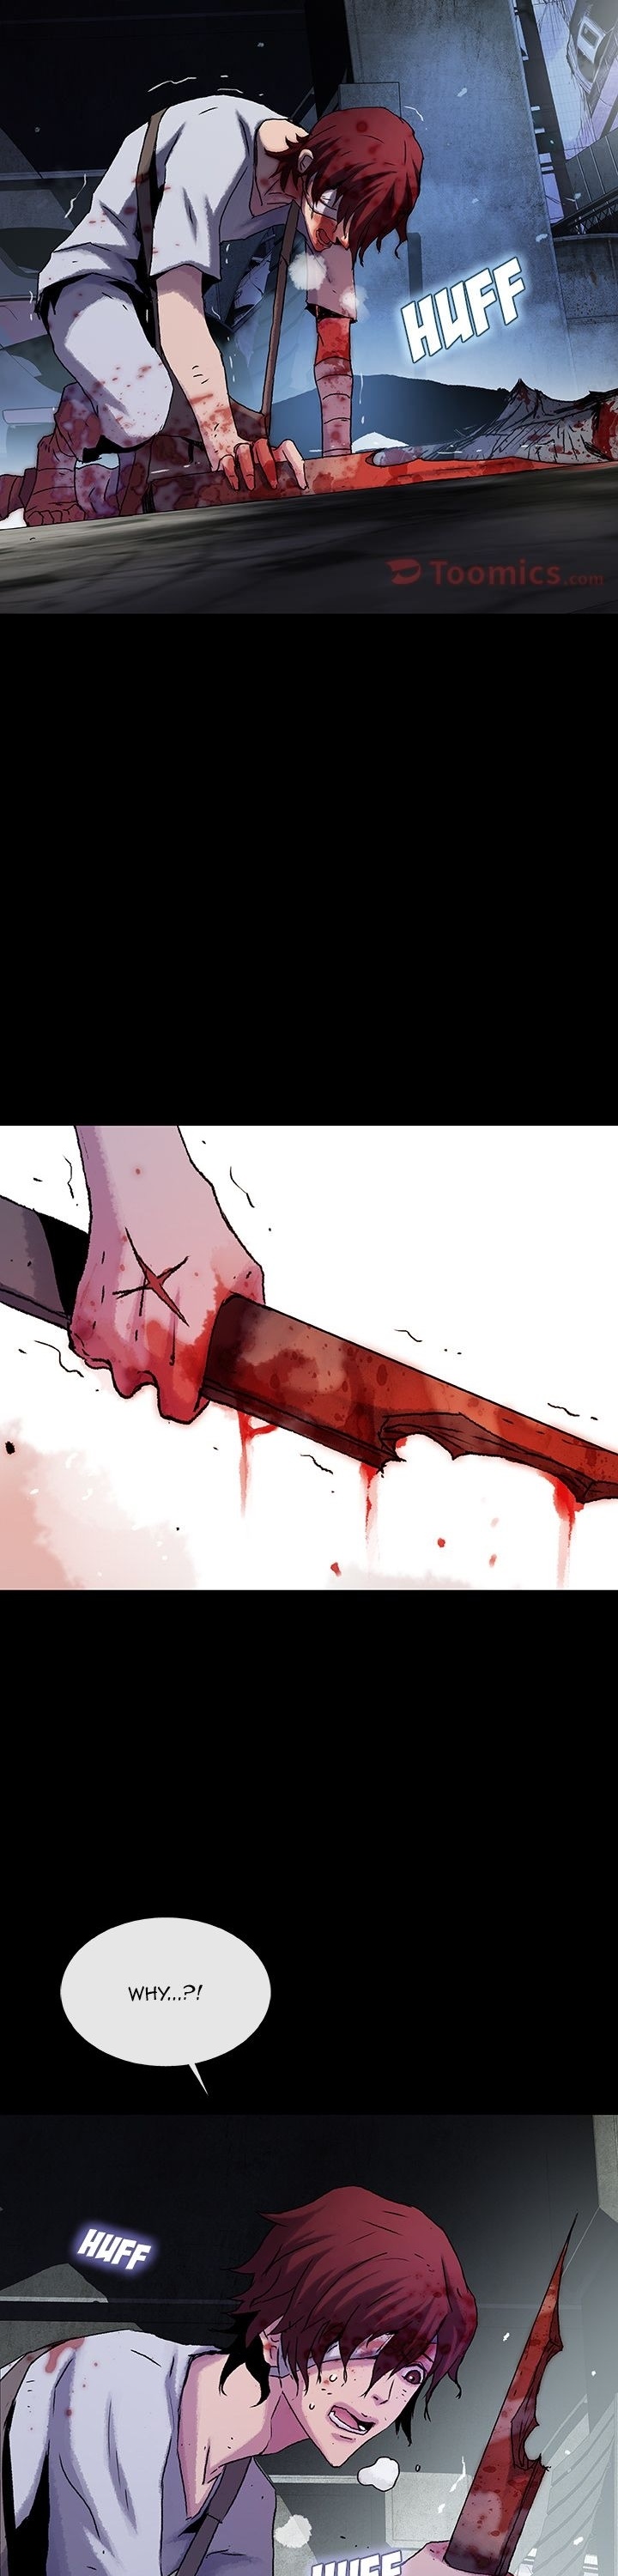 Blood Blade image